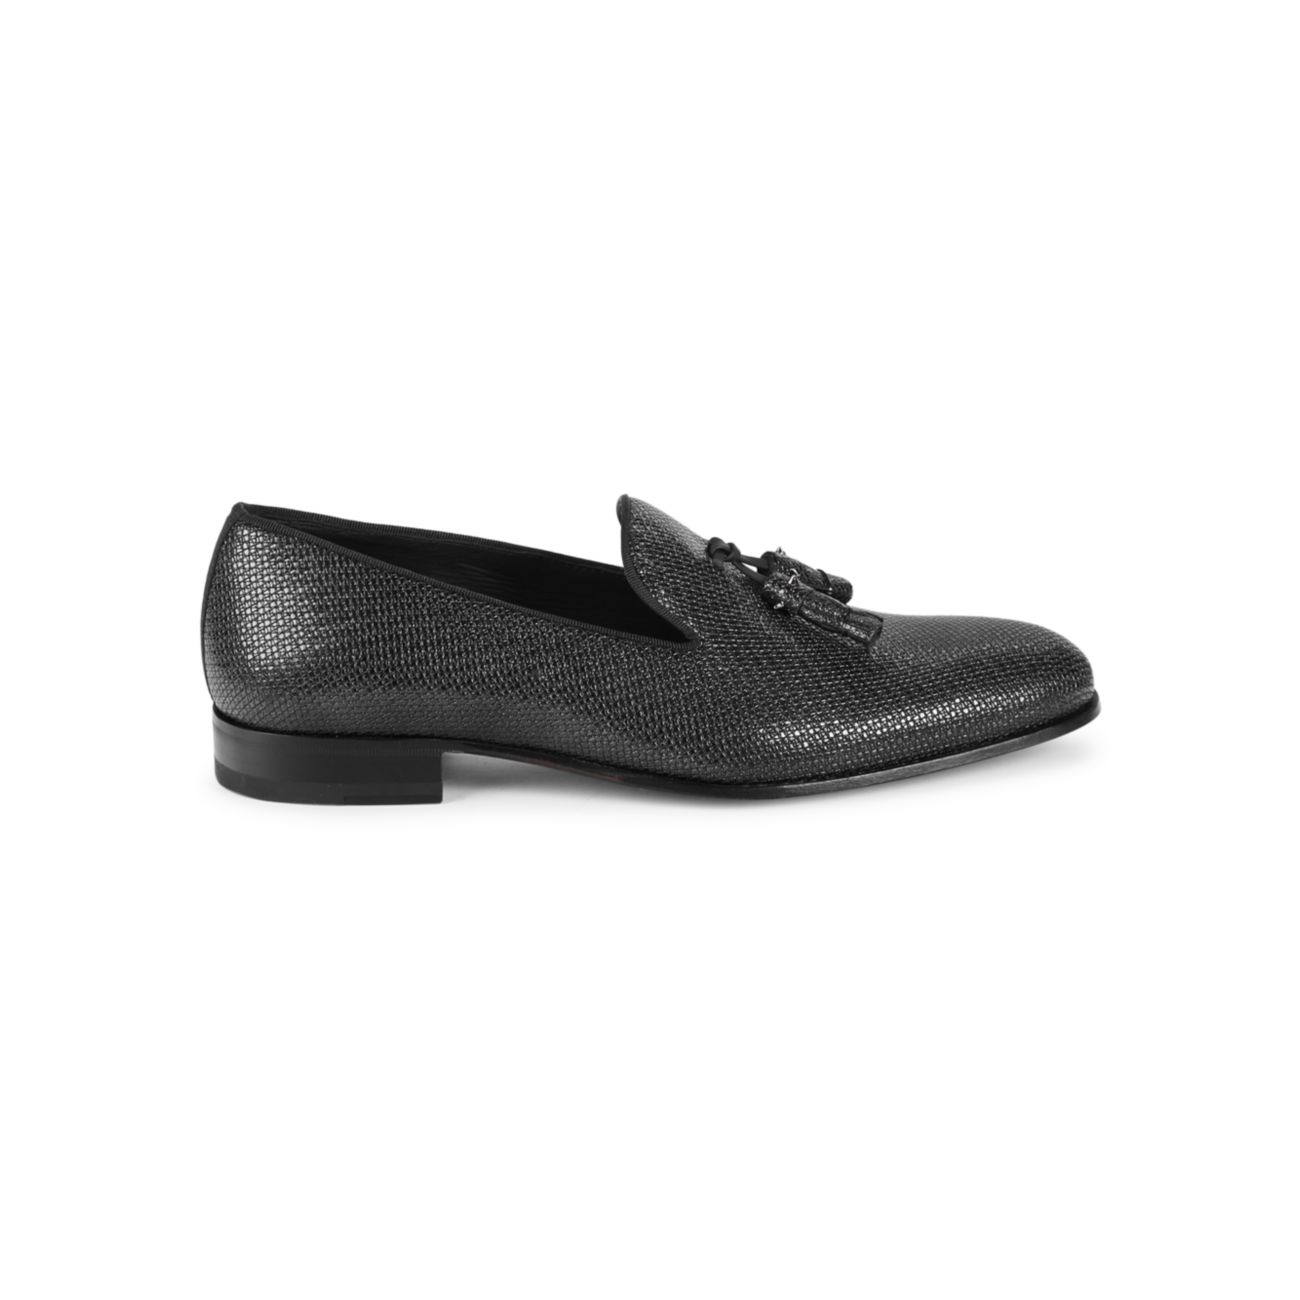 Iguana-Embossed Leather Tassel Loafers Mezlan